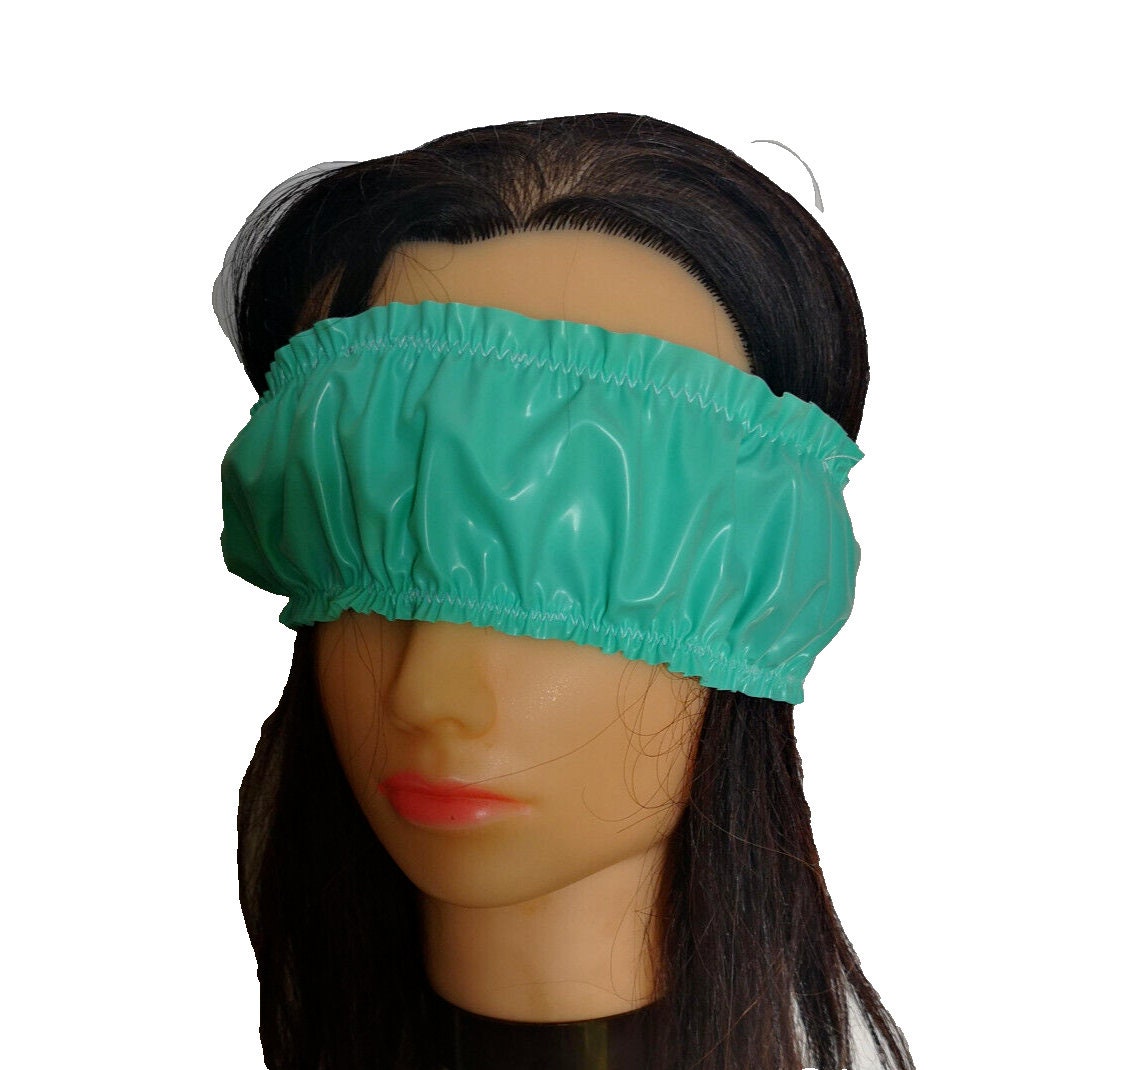 Mindfold – Sensory Deprivation Mask – Blindfold – AgAg